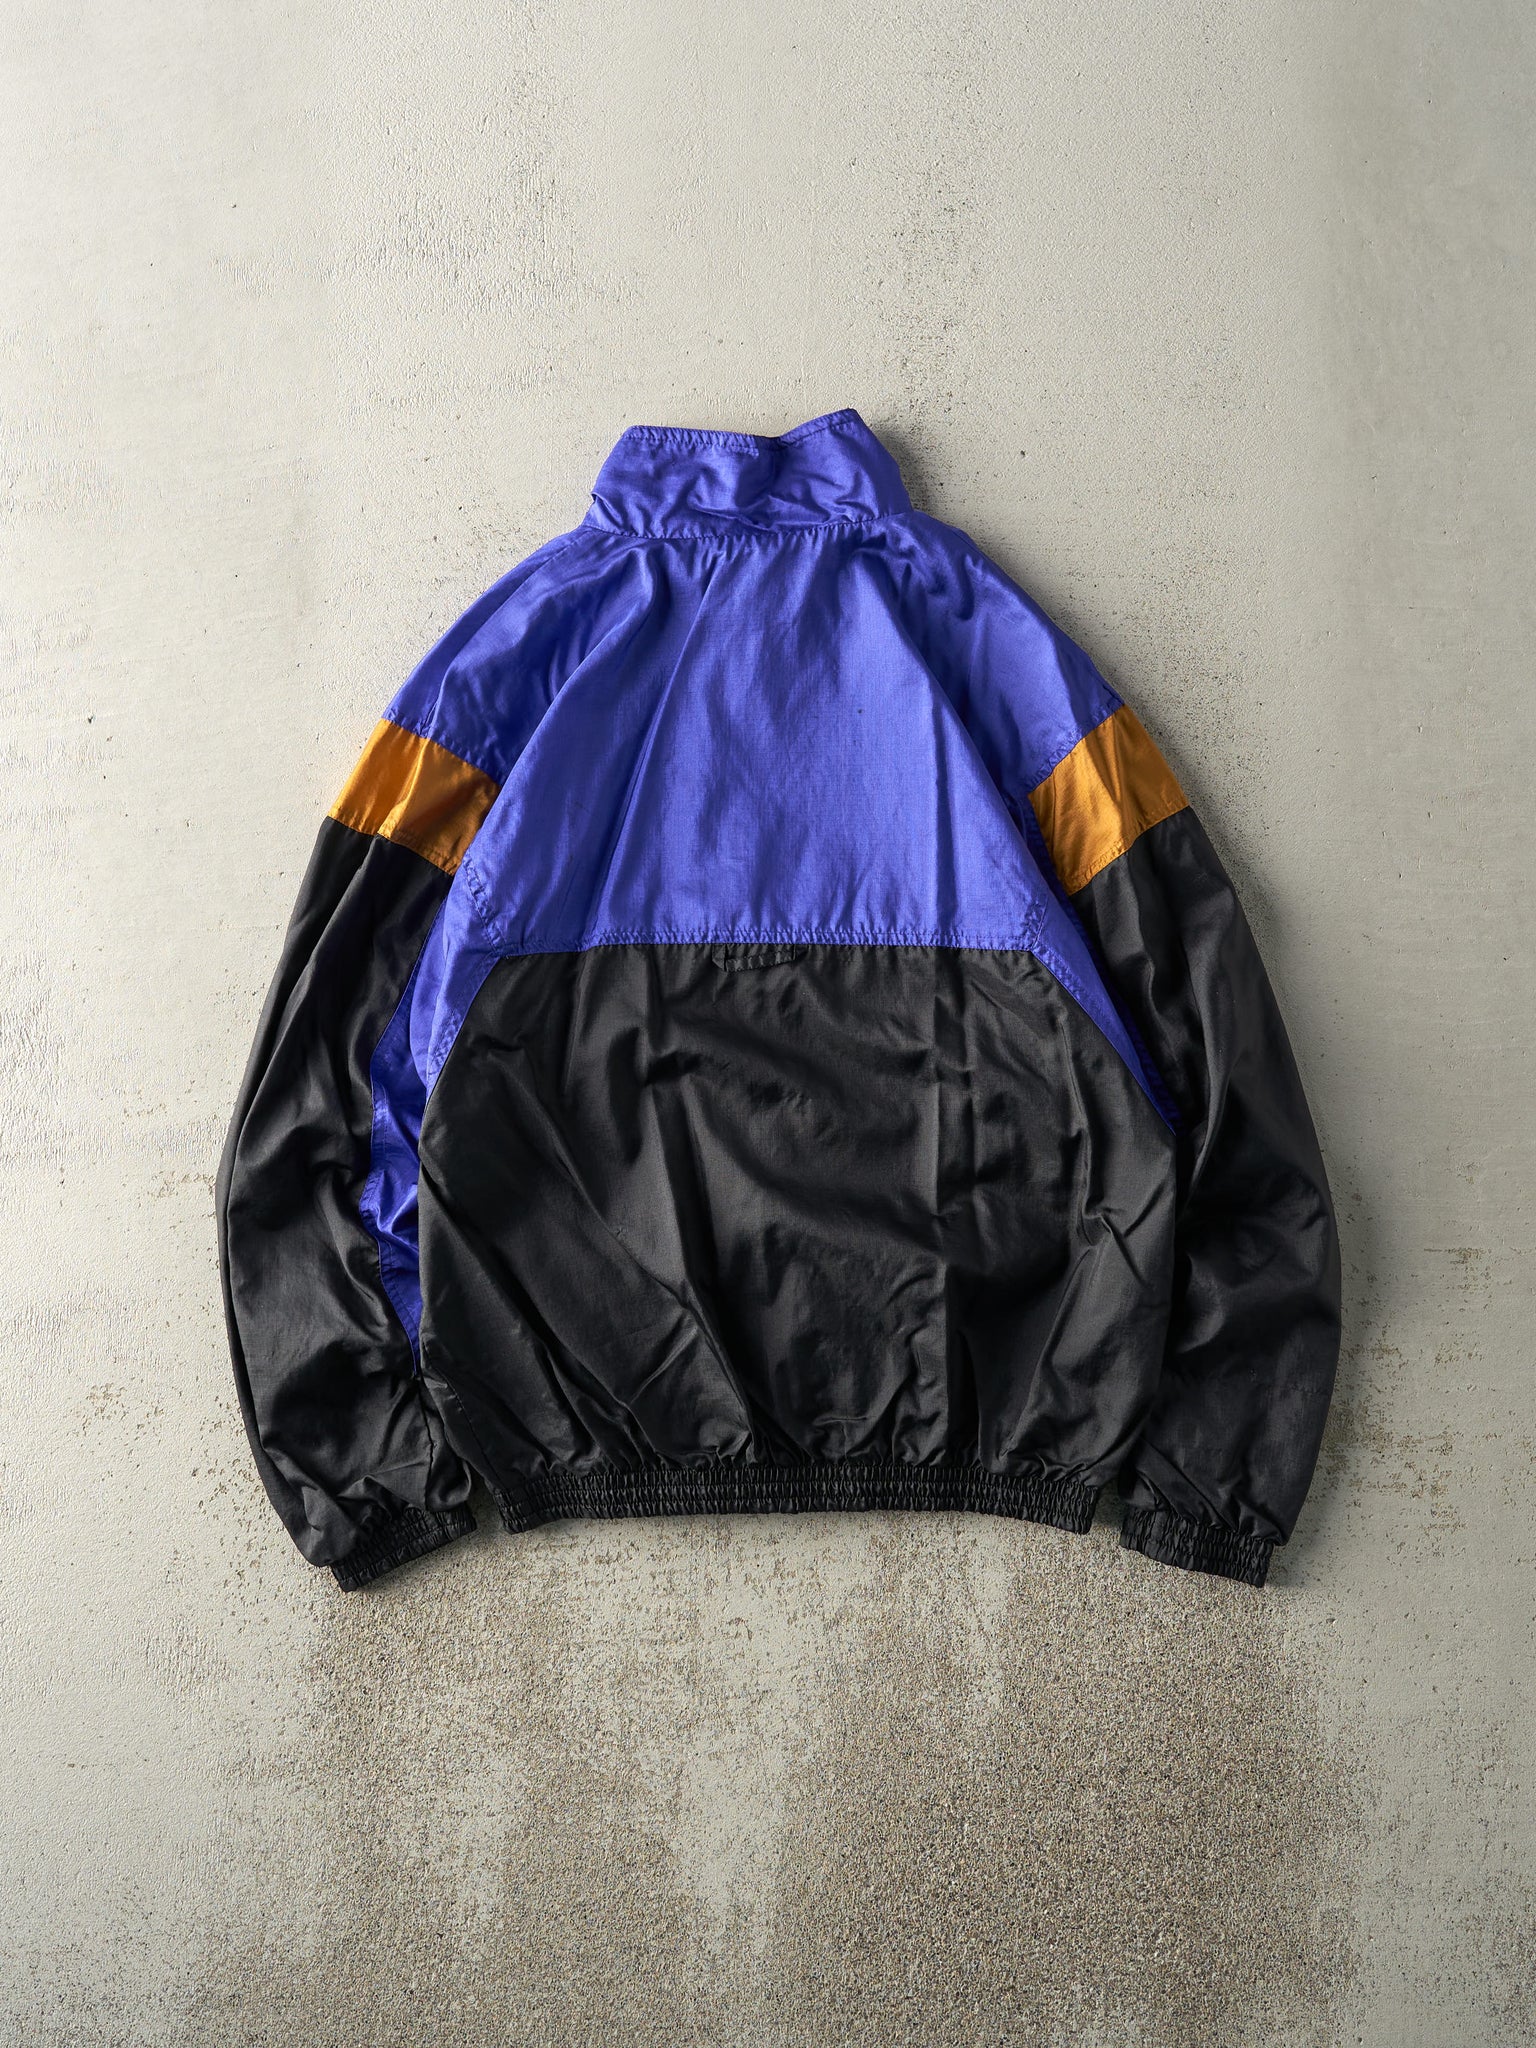 Vintage 90s Purple & Black Nike Zip Up Windbreaker Jacket (M)